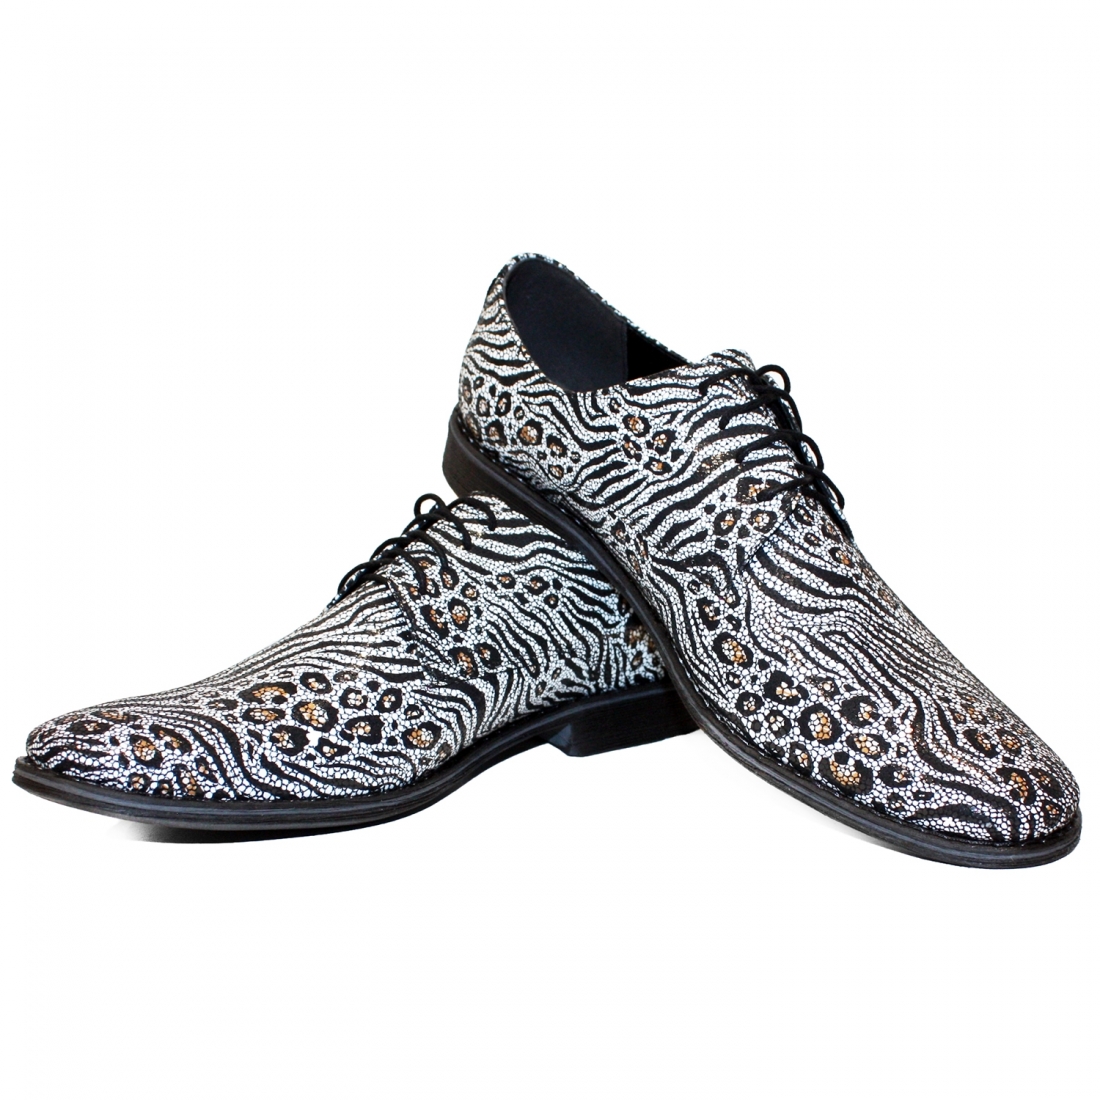 Modello Zeberro - Zapatos Clásicos - Handmade Colorful Italian Leather Shoes